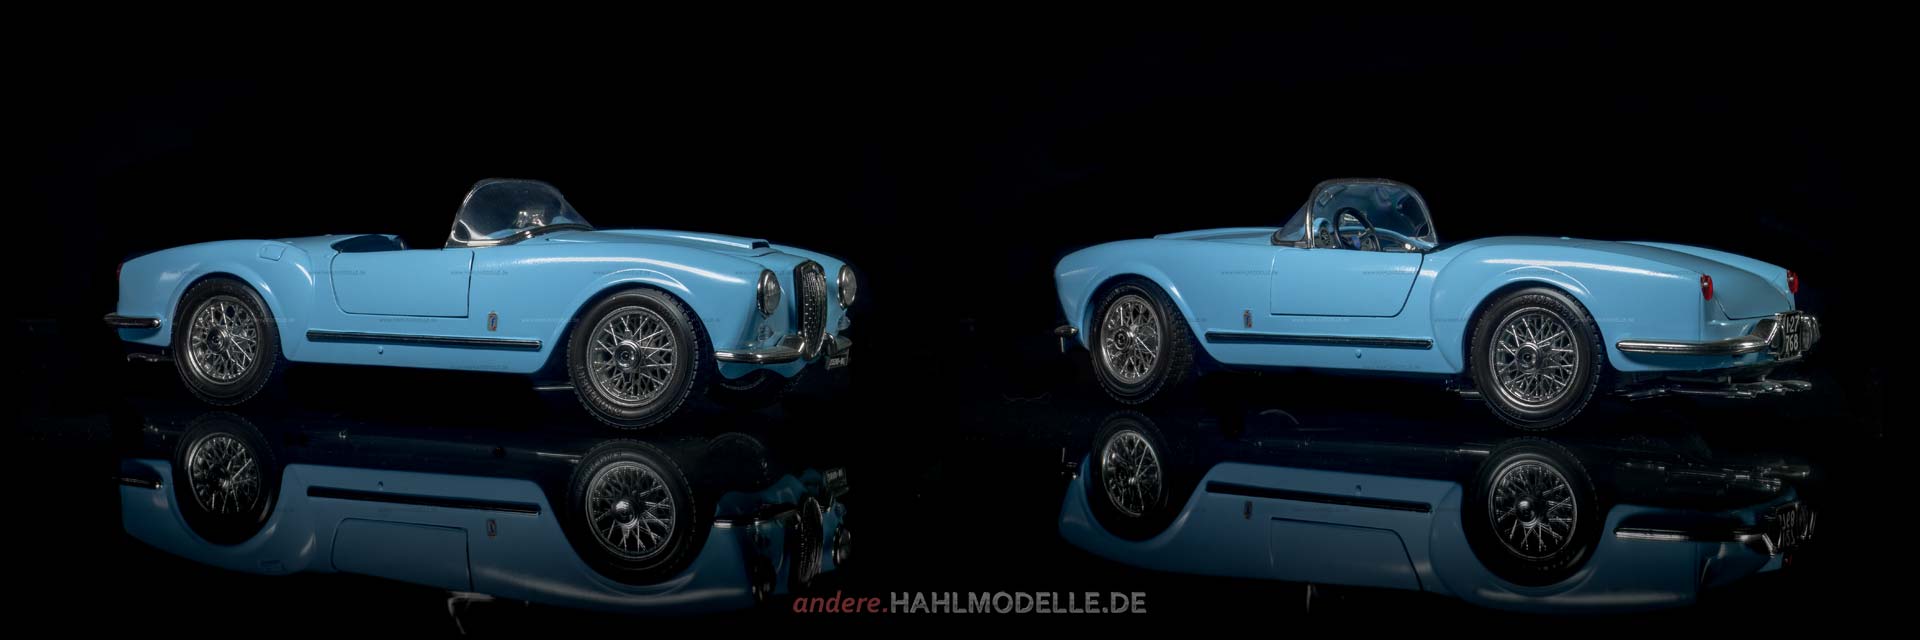 Lancia Aurelia B 24 Spider | Roadster | Bburago | www.andere.hahlmodelle.de